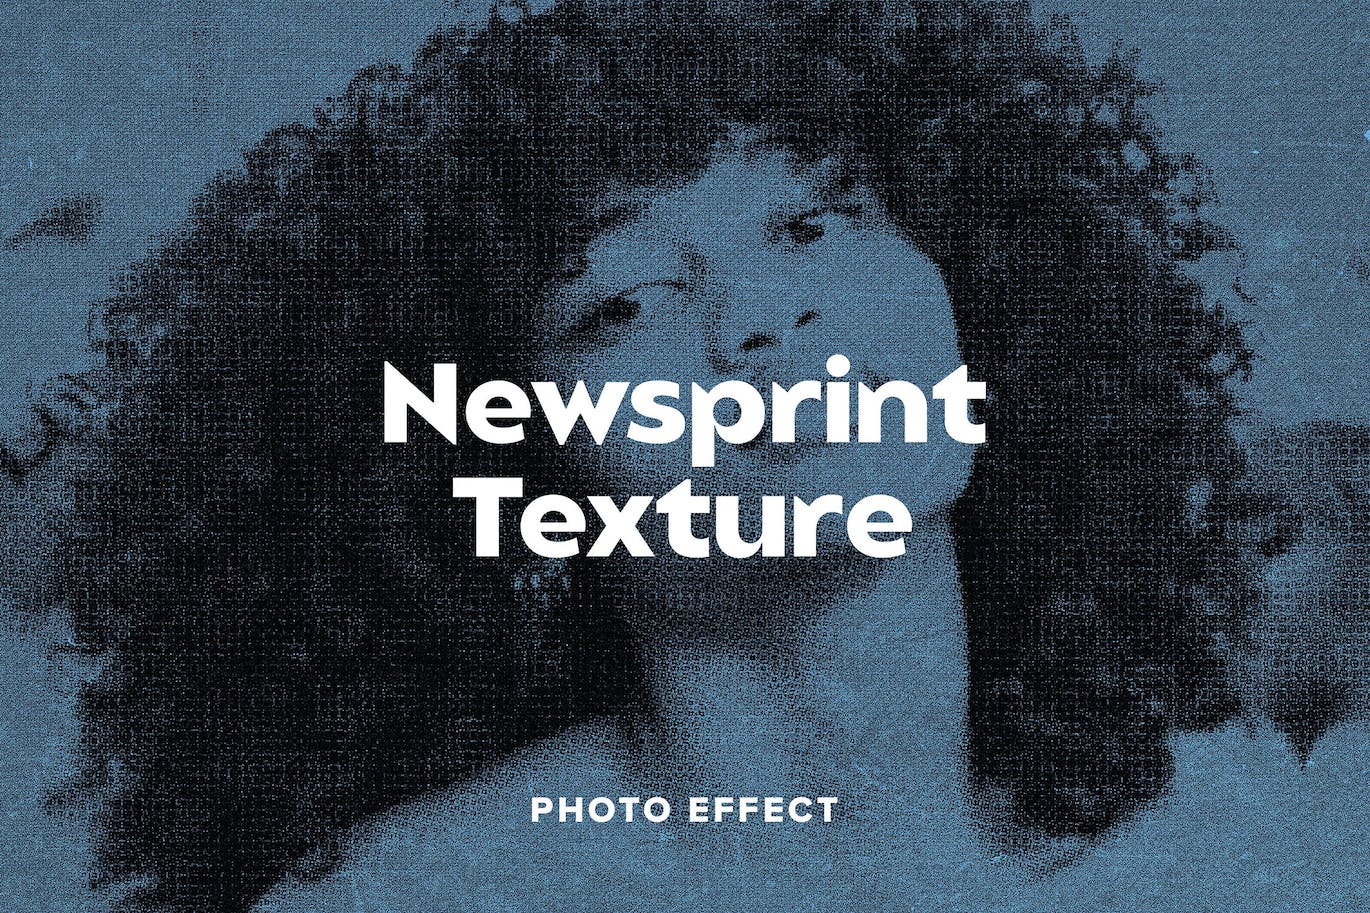 新闻报纸纹理照片效果PS图层样式 Newsprint Texture Photo Effect 插件预设 第1张